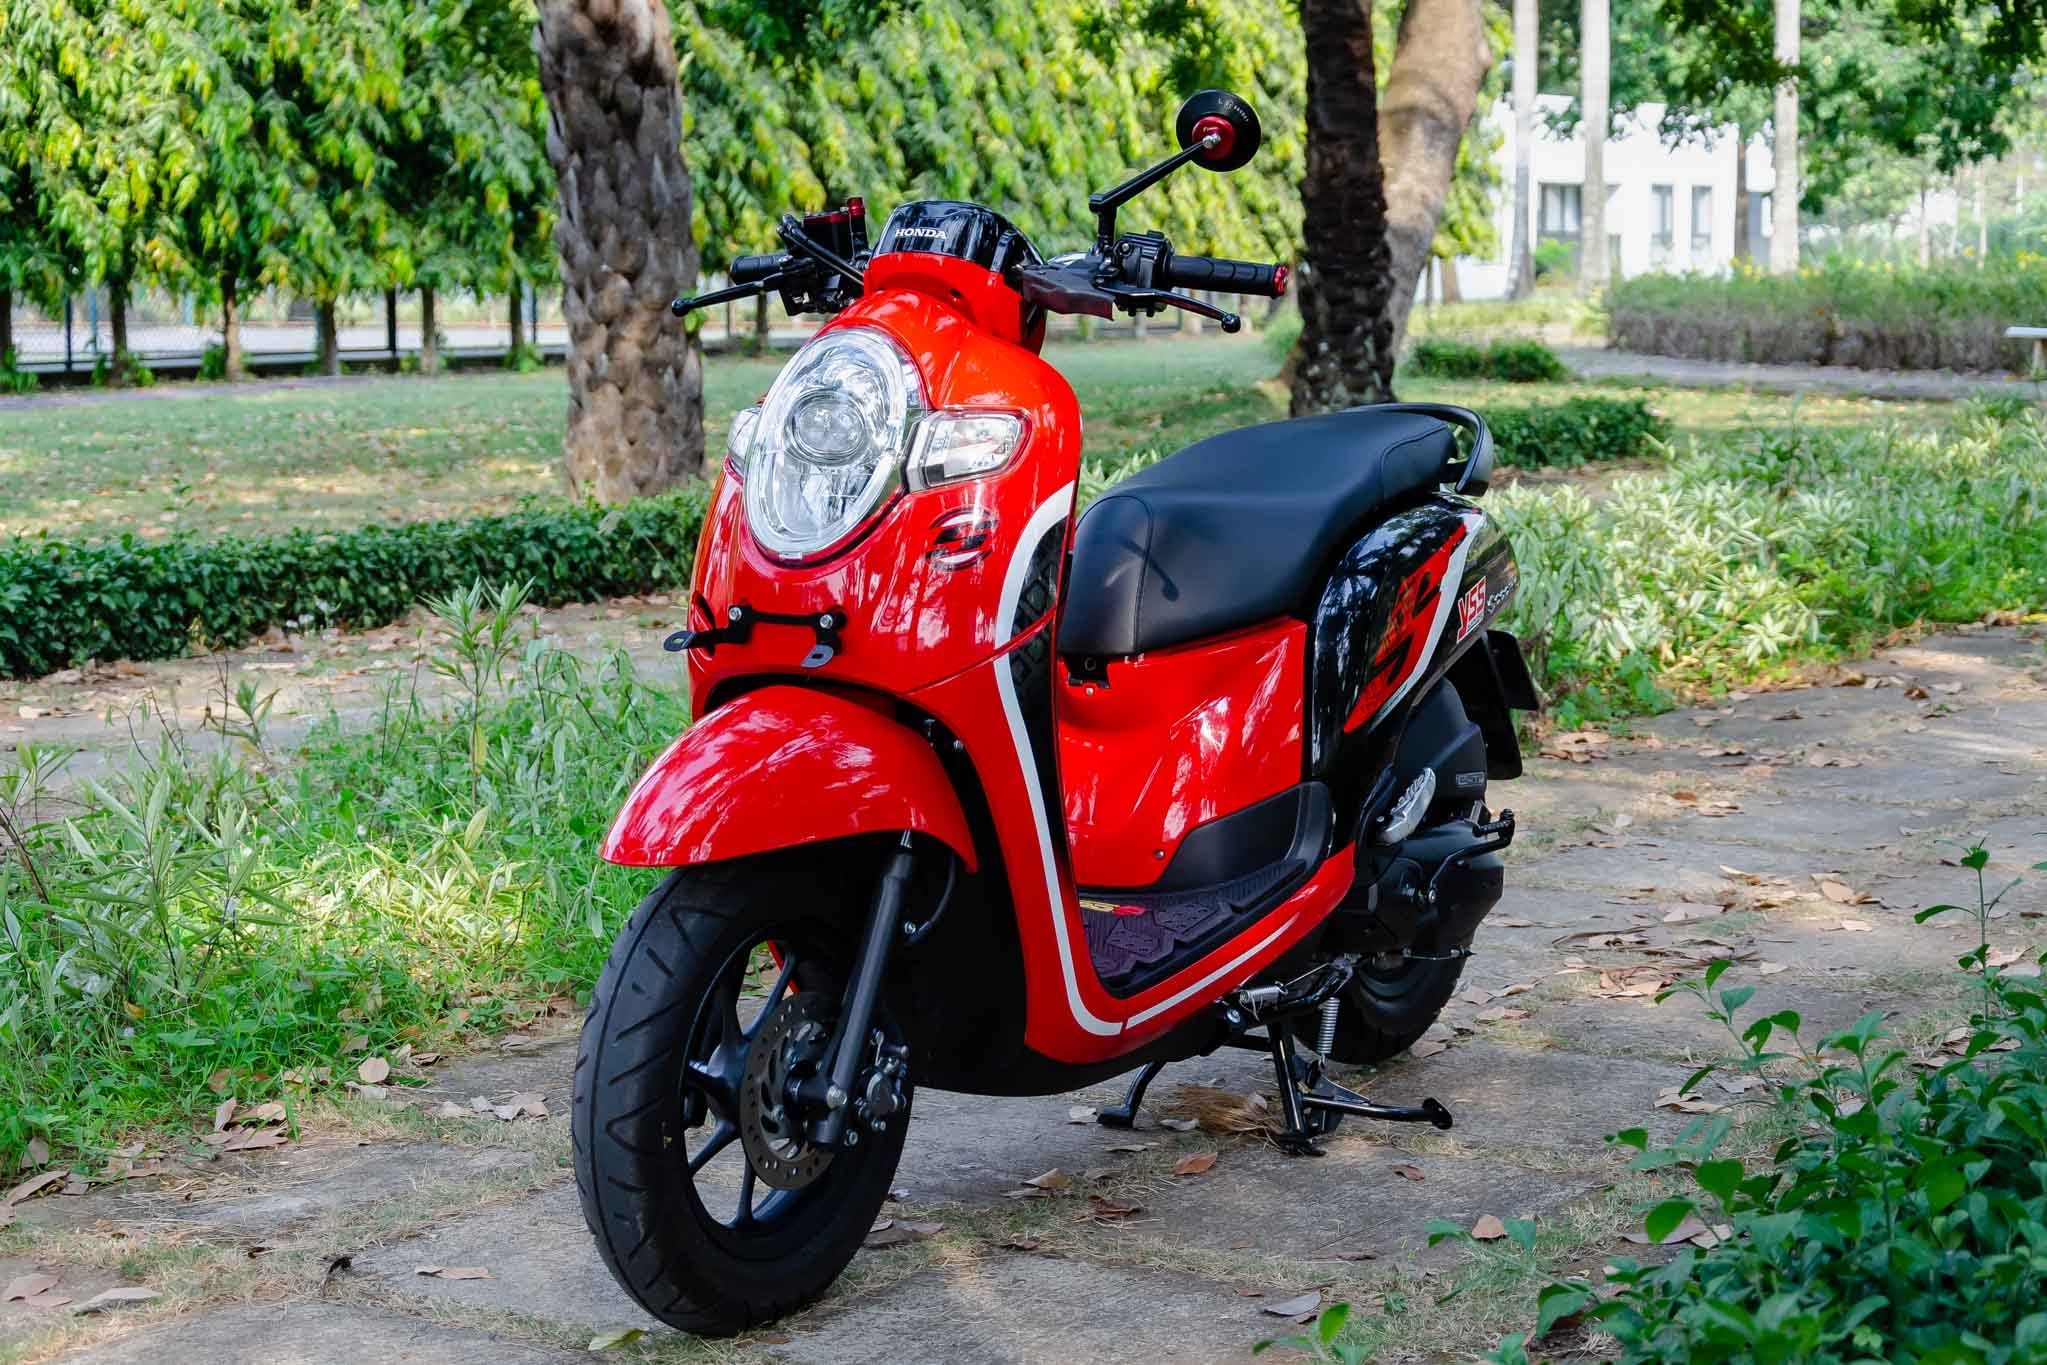 Honda đăng ký bản quyền xe tay ga Scoopy tại Việt Nam sắp phân phối chính  hãng hay chỉ đơn giản chống đạo nhái